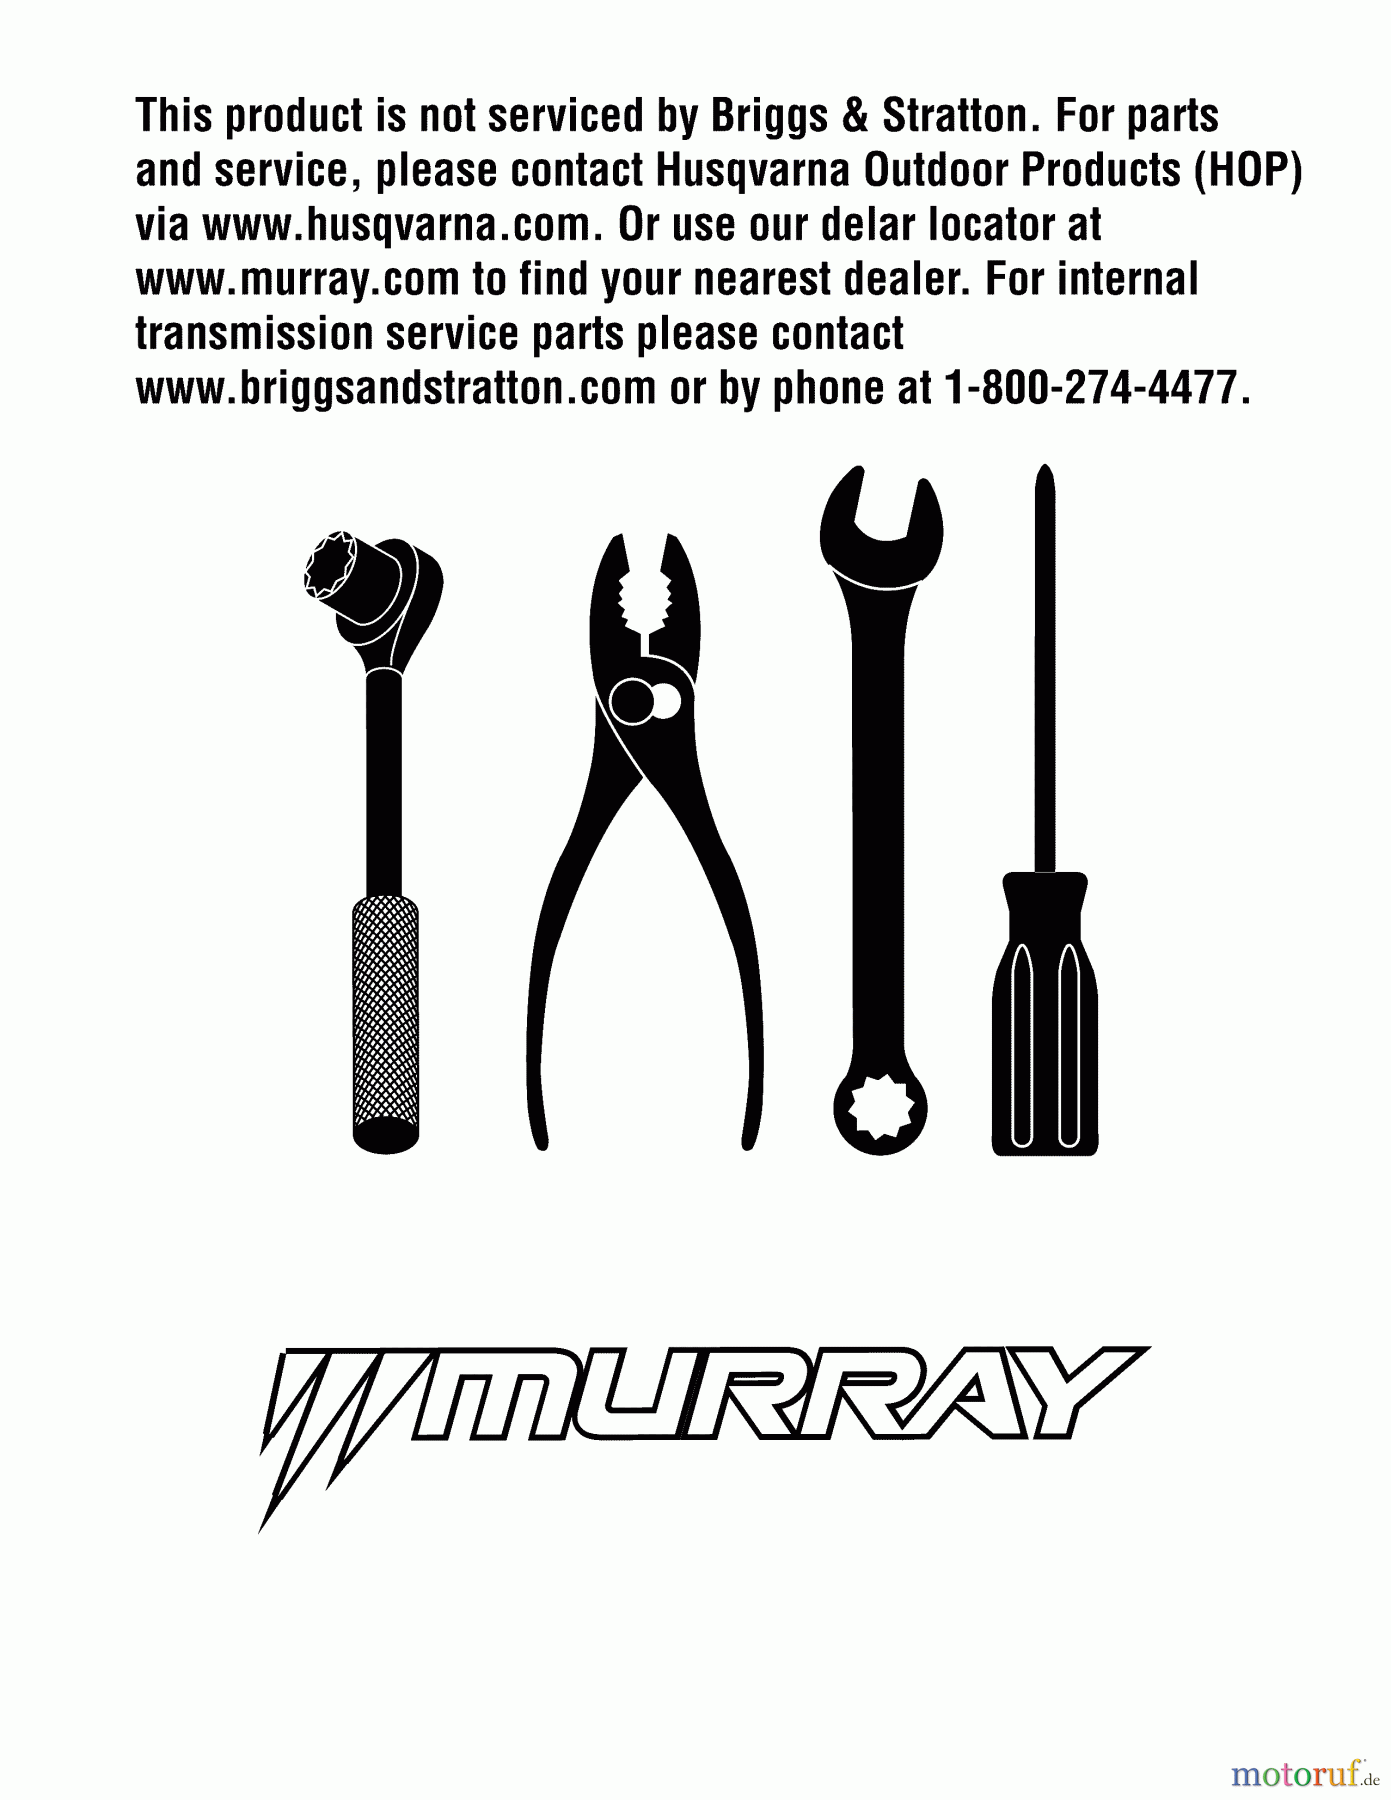  Murray Rasenmäher M22500 (96114002600) - Murray 22